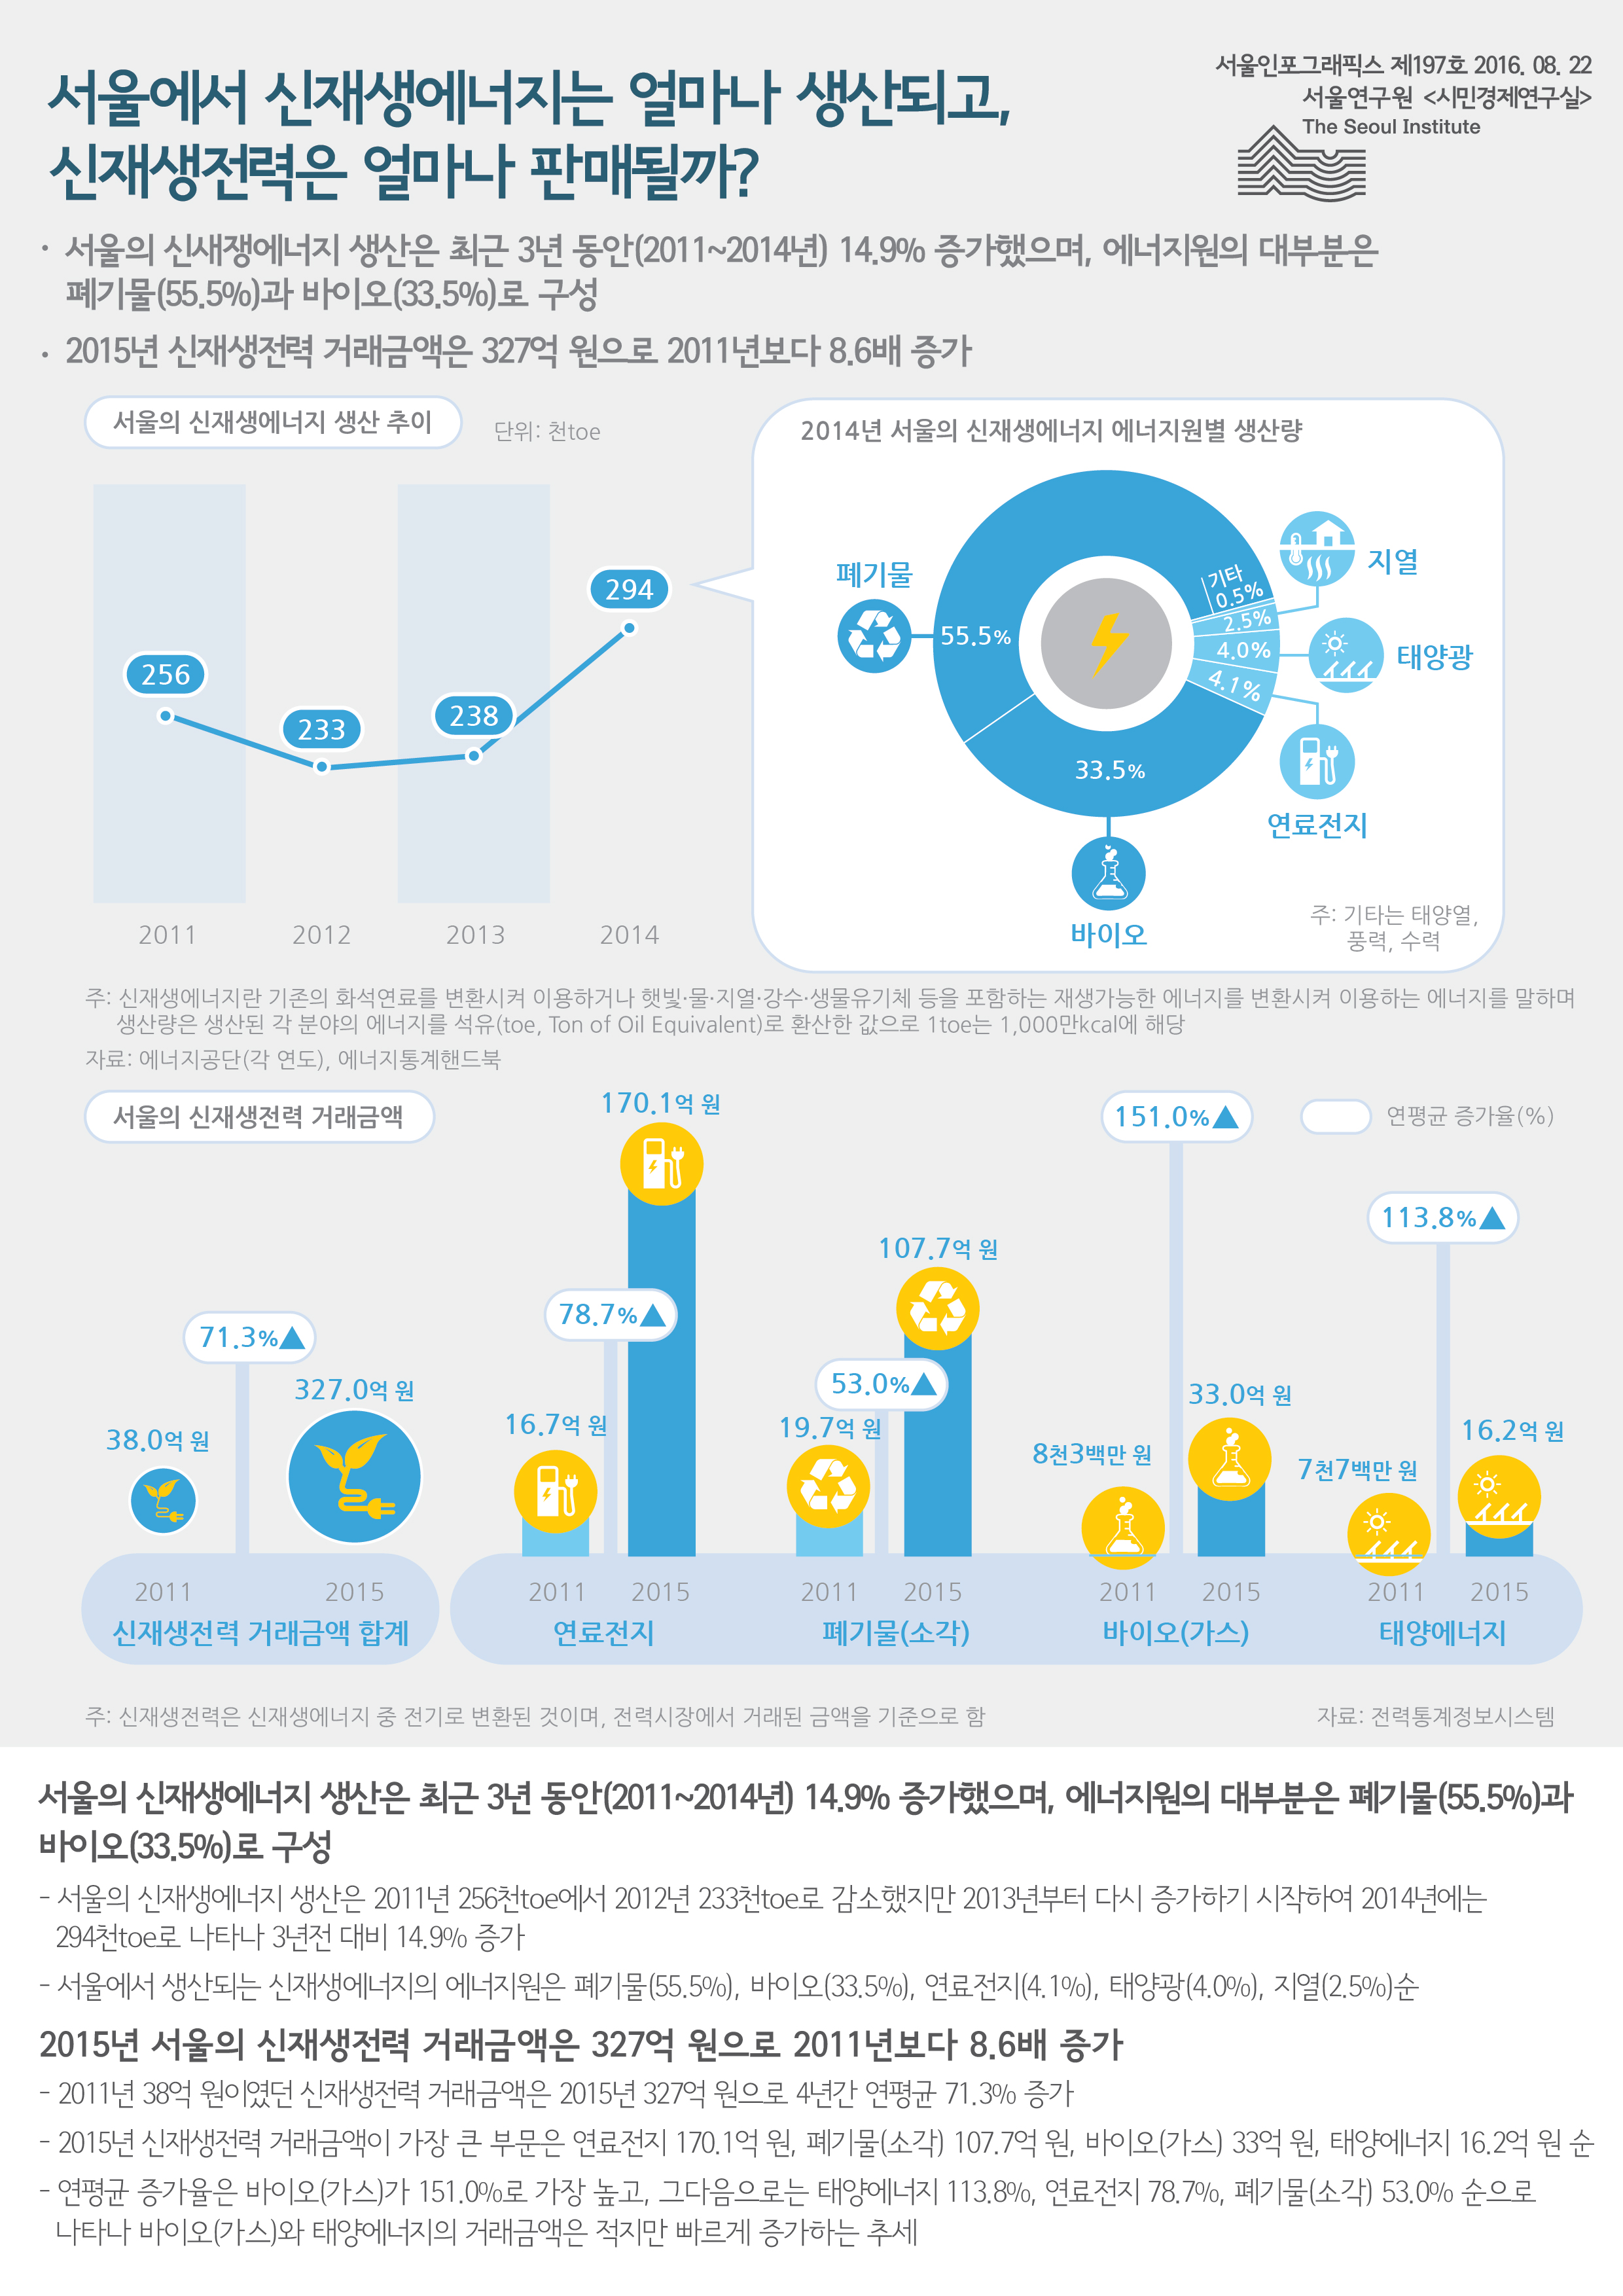 서울에서 신재생에너지는 얼마나 생산되고, 신재생전력은 얼마나 판매될까? 서울인포그래픽스 제197호 2016년 8월 22일 서울의 신새쟁에너지 생산은 최근 3년 동안(2011~2014년) 14.9% 증가했으며, 에너지원의 대부분은 폐기물(55.5%)과 바이오(33.5%)로 구성. 2015년 신재생전력 거래금액은 327억 원으로 2011년보다 8.6배 증가함으로 정리 될 수 있습니다. 인포그래픽으로 제공되는 그래픽은 하단에 표로 자세히 제공됩니다.